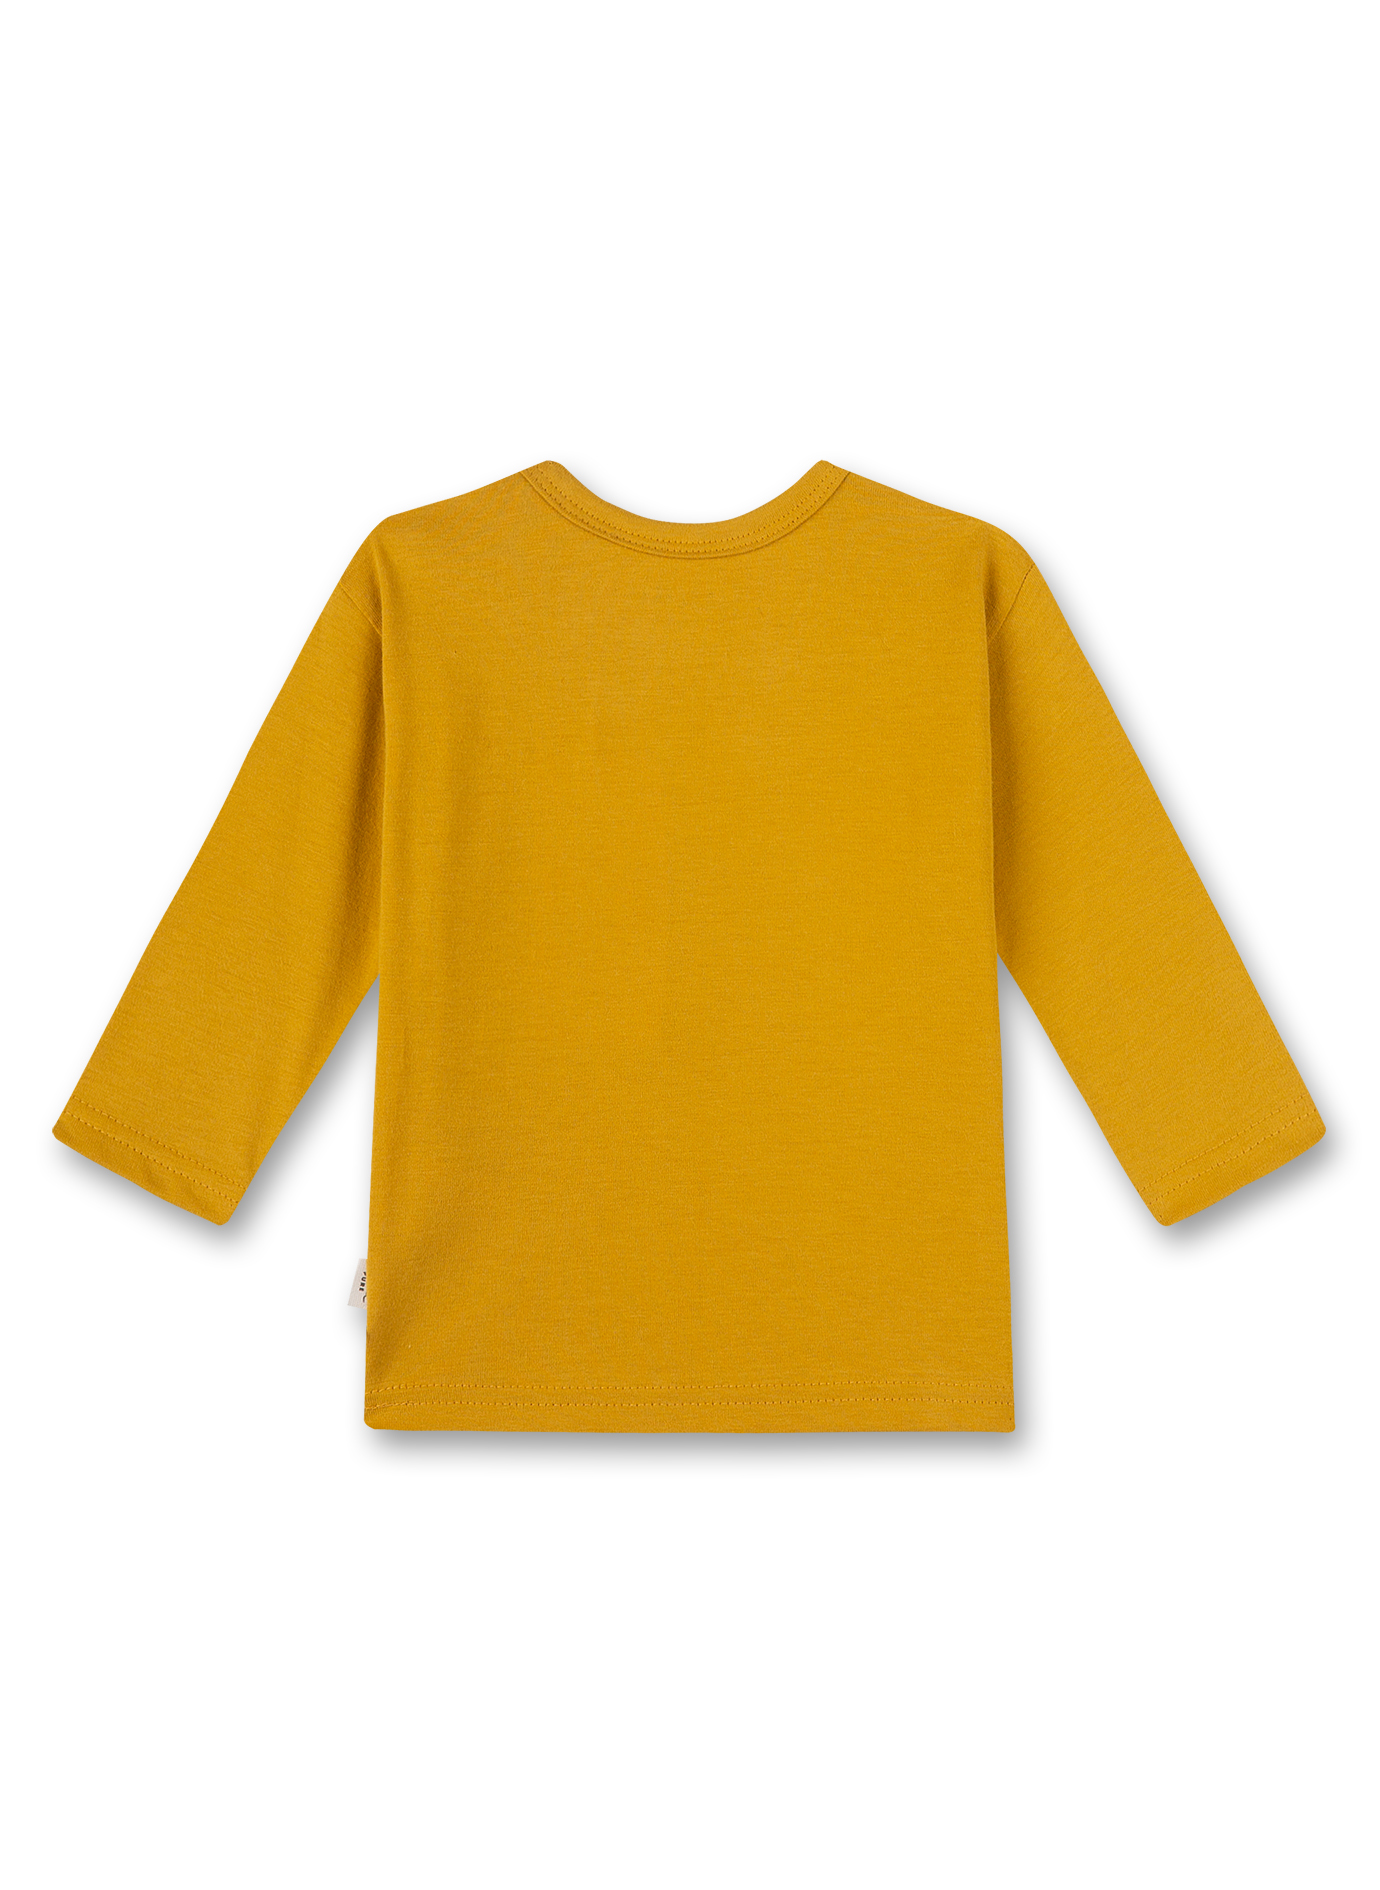 Jungen-Shirt langarm Gelb